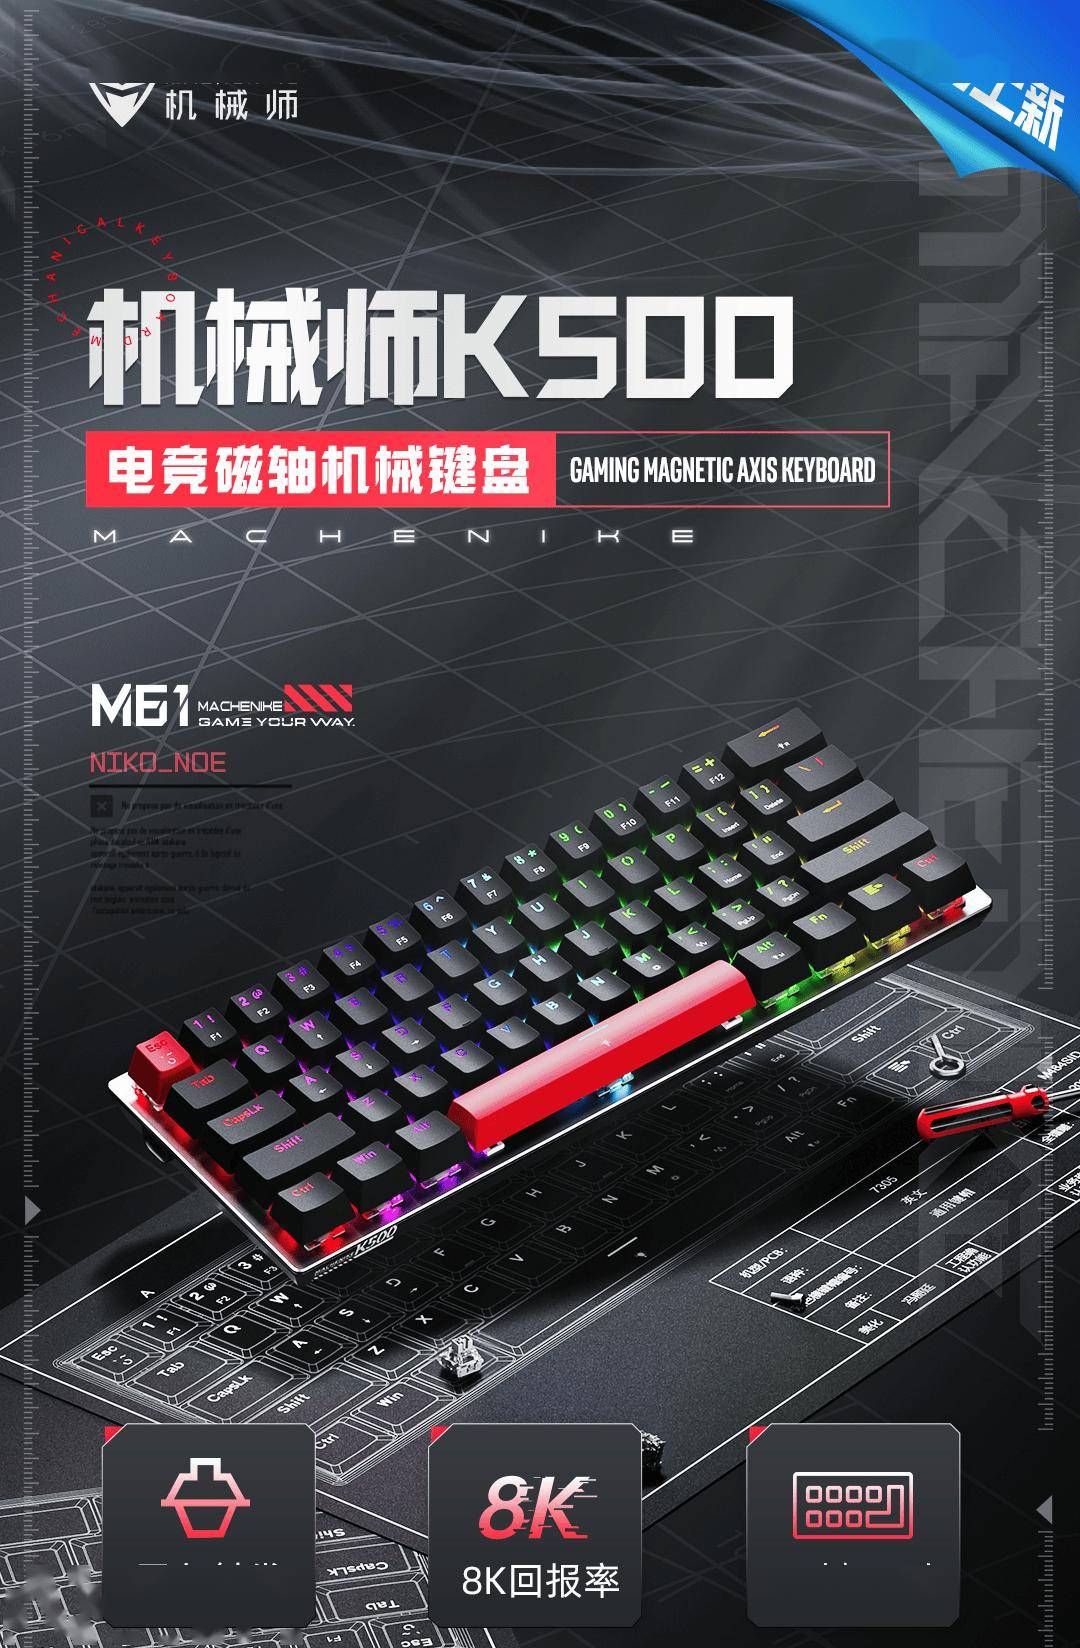 机械师K500-M61入门级磁轴键盘开售 支持8K回报率